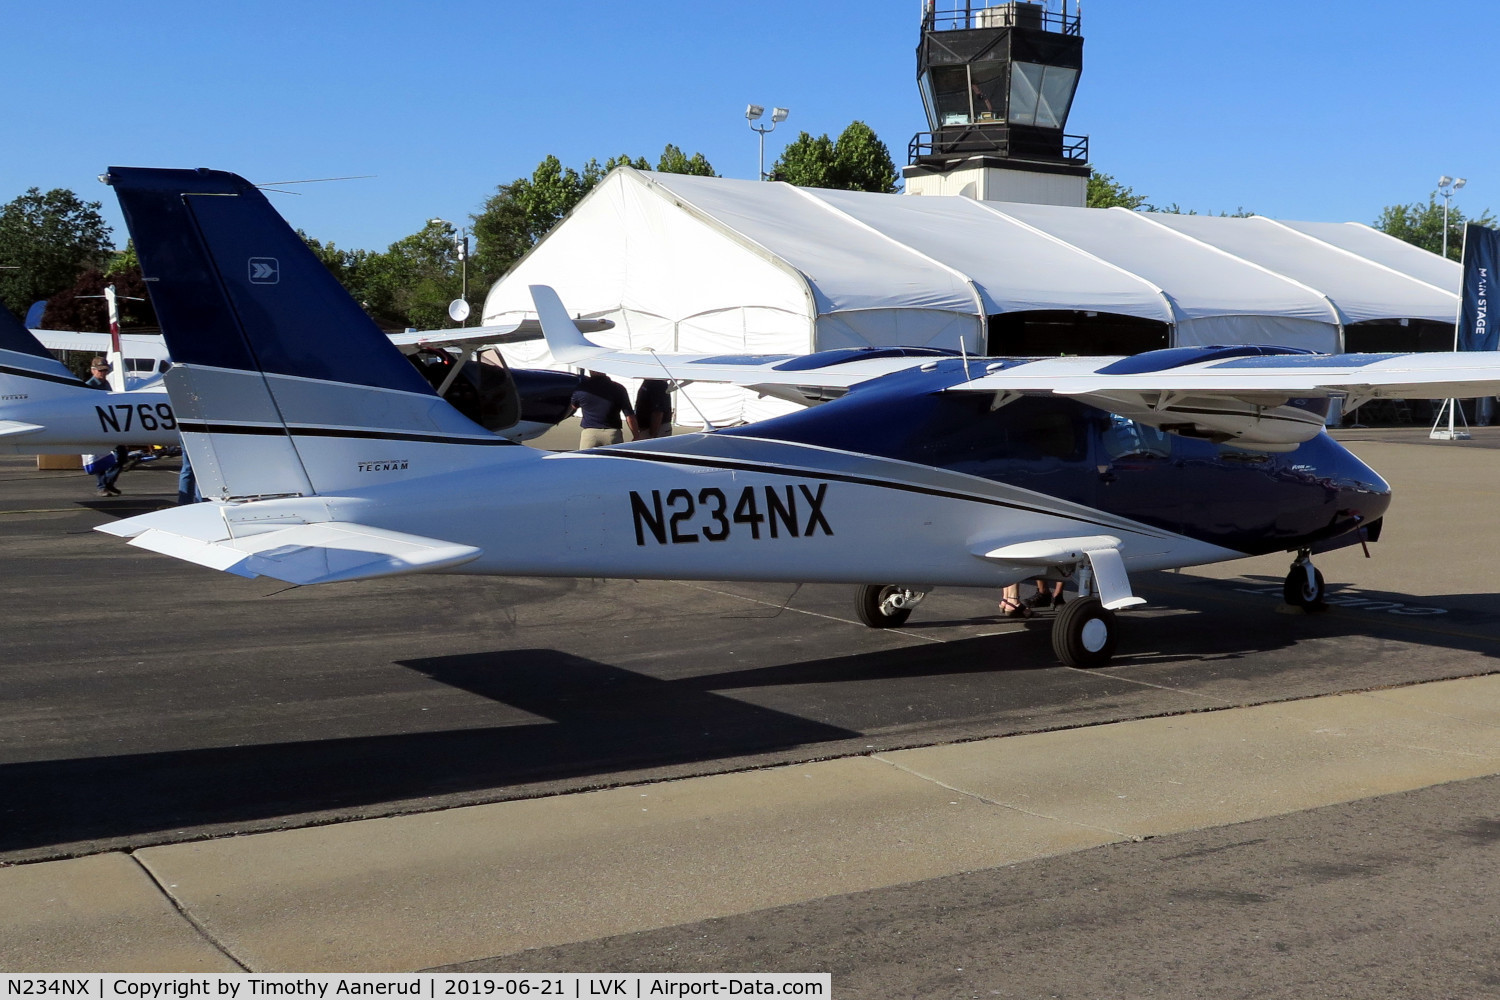 N234NX, 2018 Tecnam P-2006T C/N 234/US, 2018 Tecnam P-2006T, c/n: 234/US, 2019 AOPA Livermore Fly-In